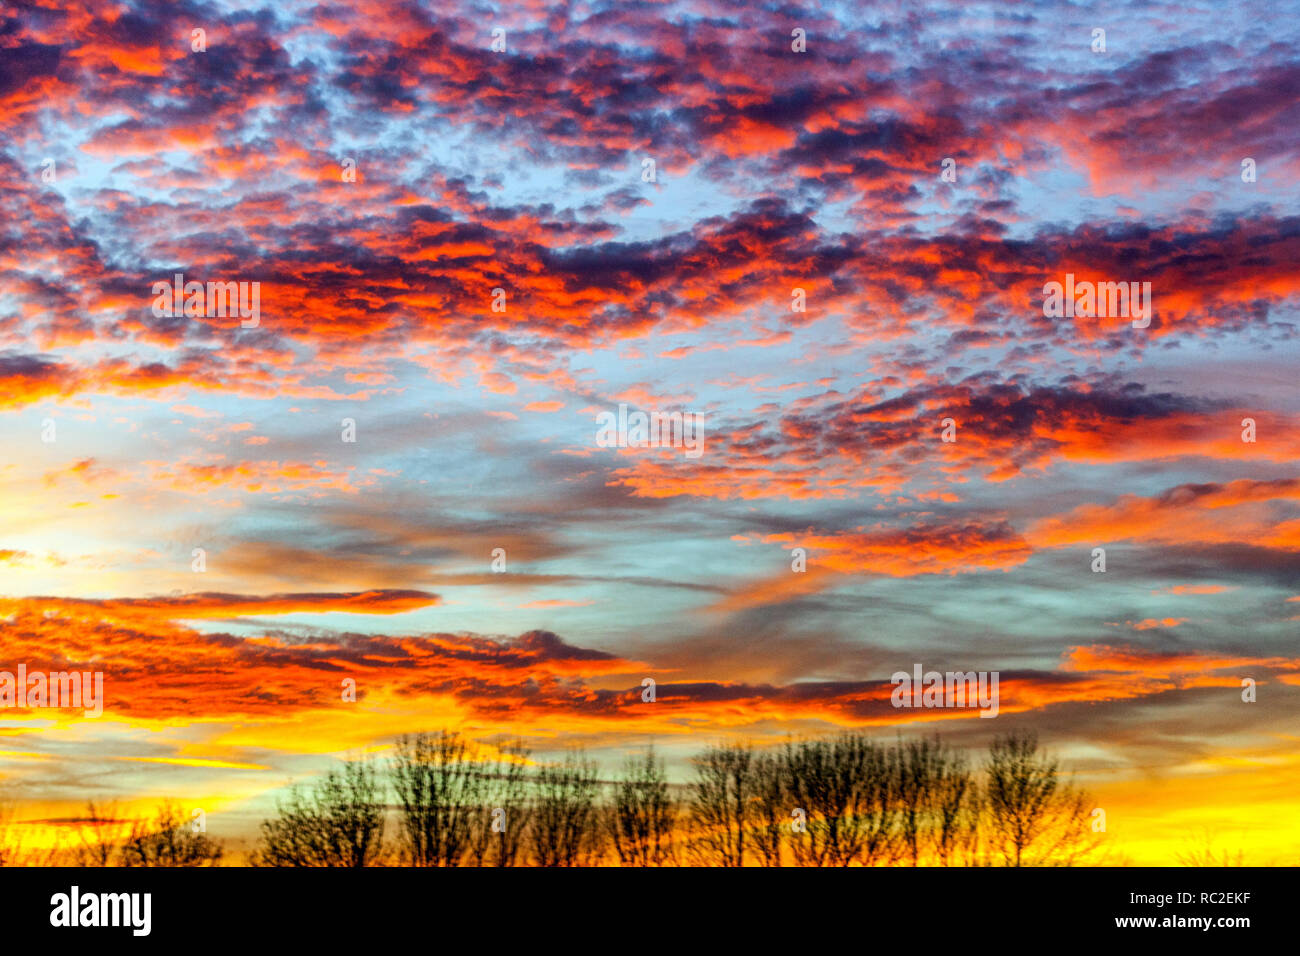 Rouge spectaculaire coucher de soleil nuages sur sky Banque D'Images